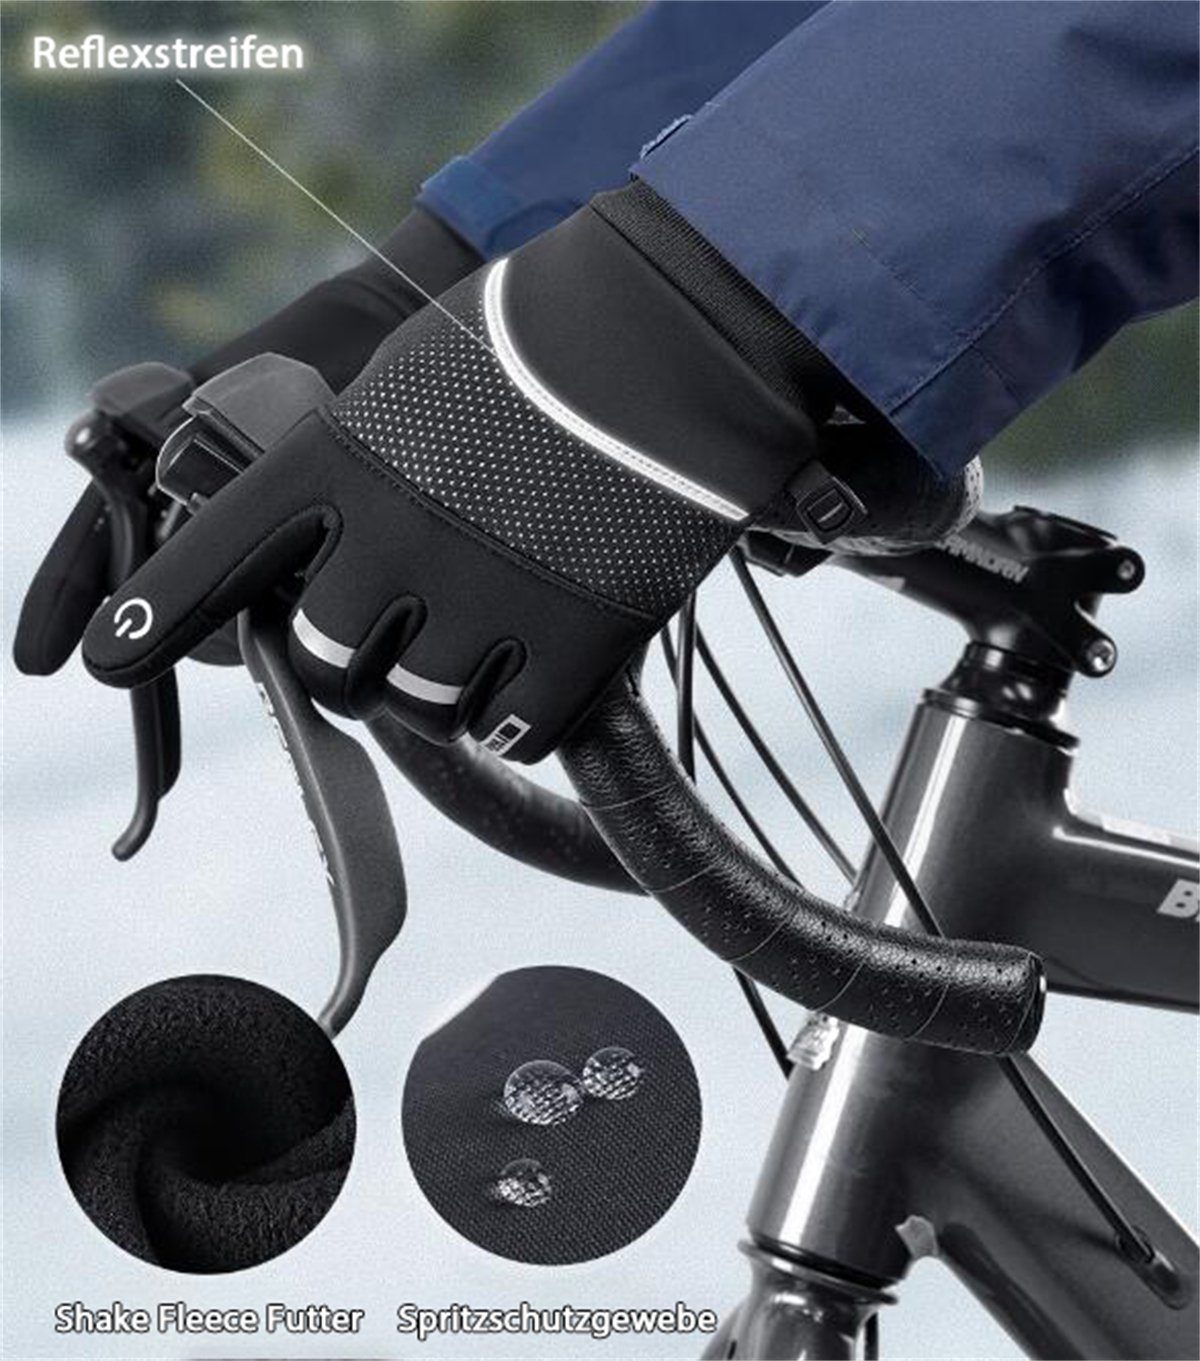 kältebeständig, im Discaver das samtig Fahrradhandschuhe Radfahren und Wasserdicht, Warme Sport-Touchscreen-Handschuhe Rosa Freien für rutschfest